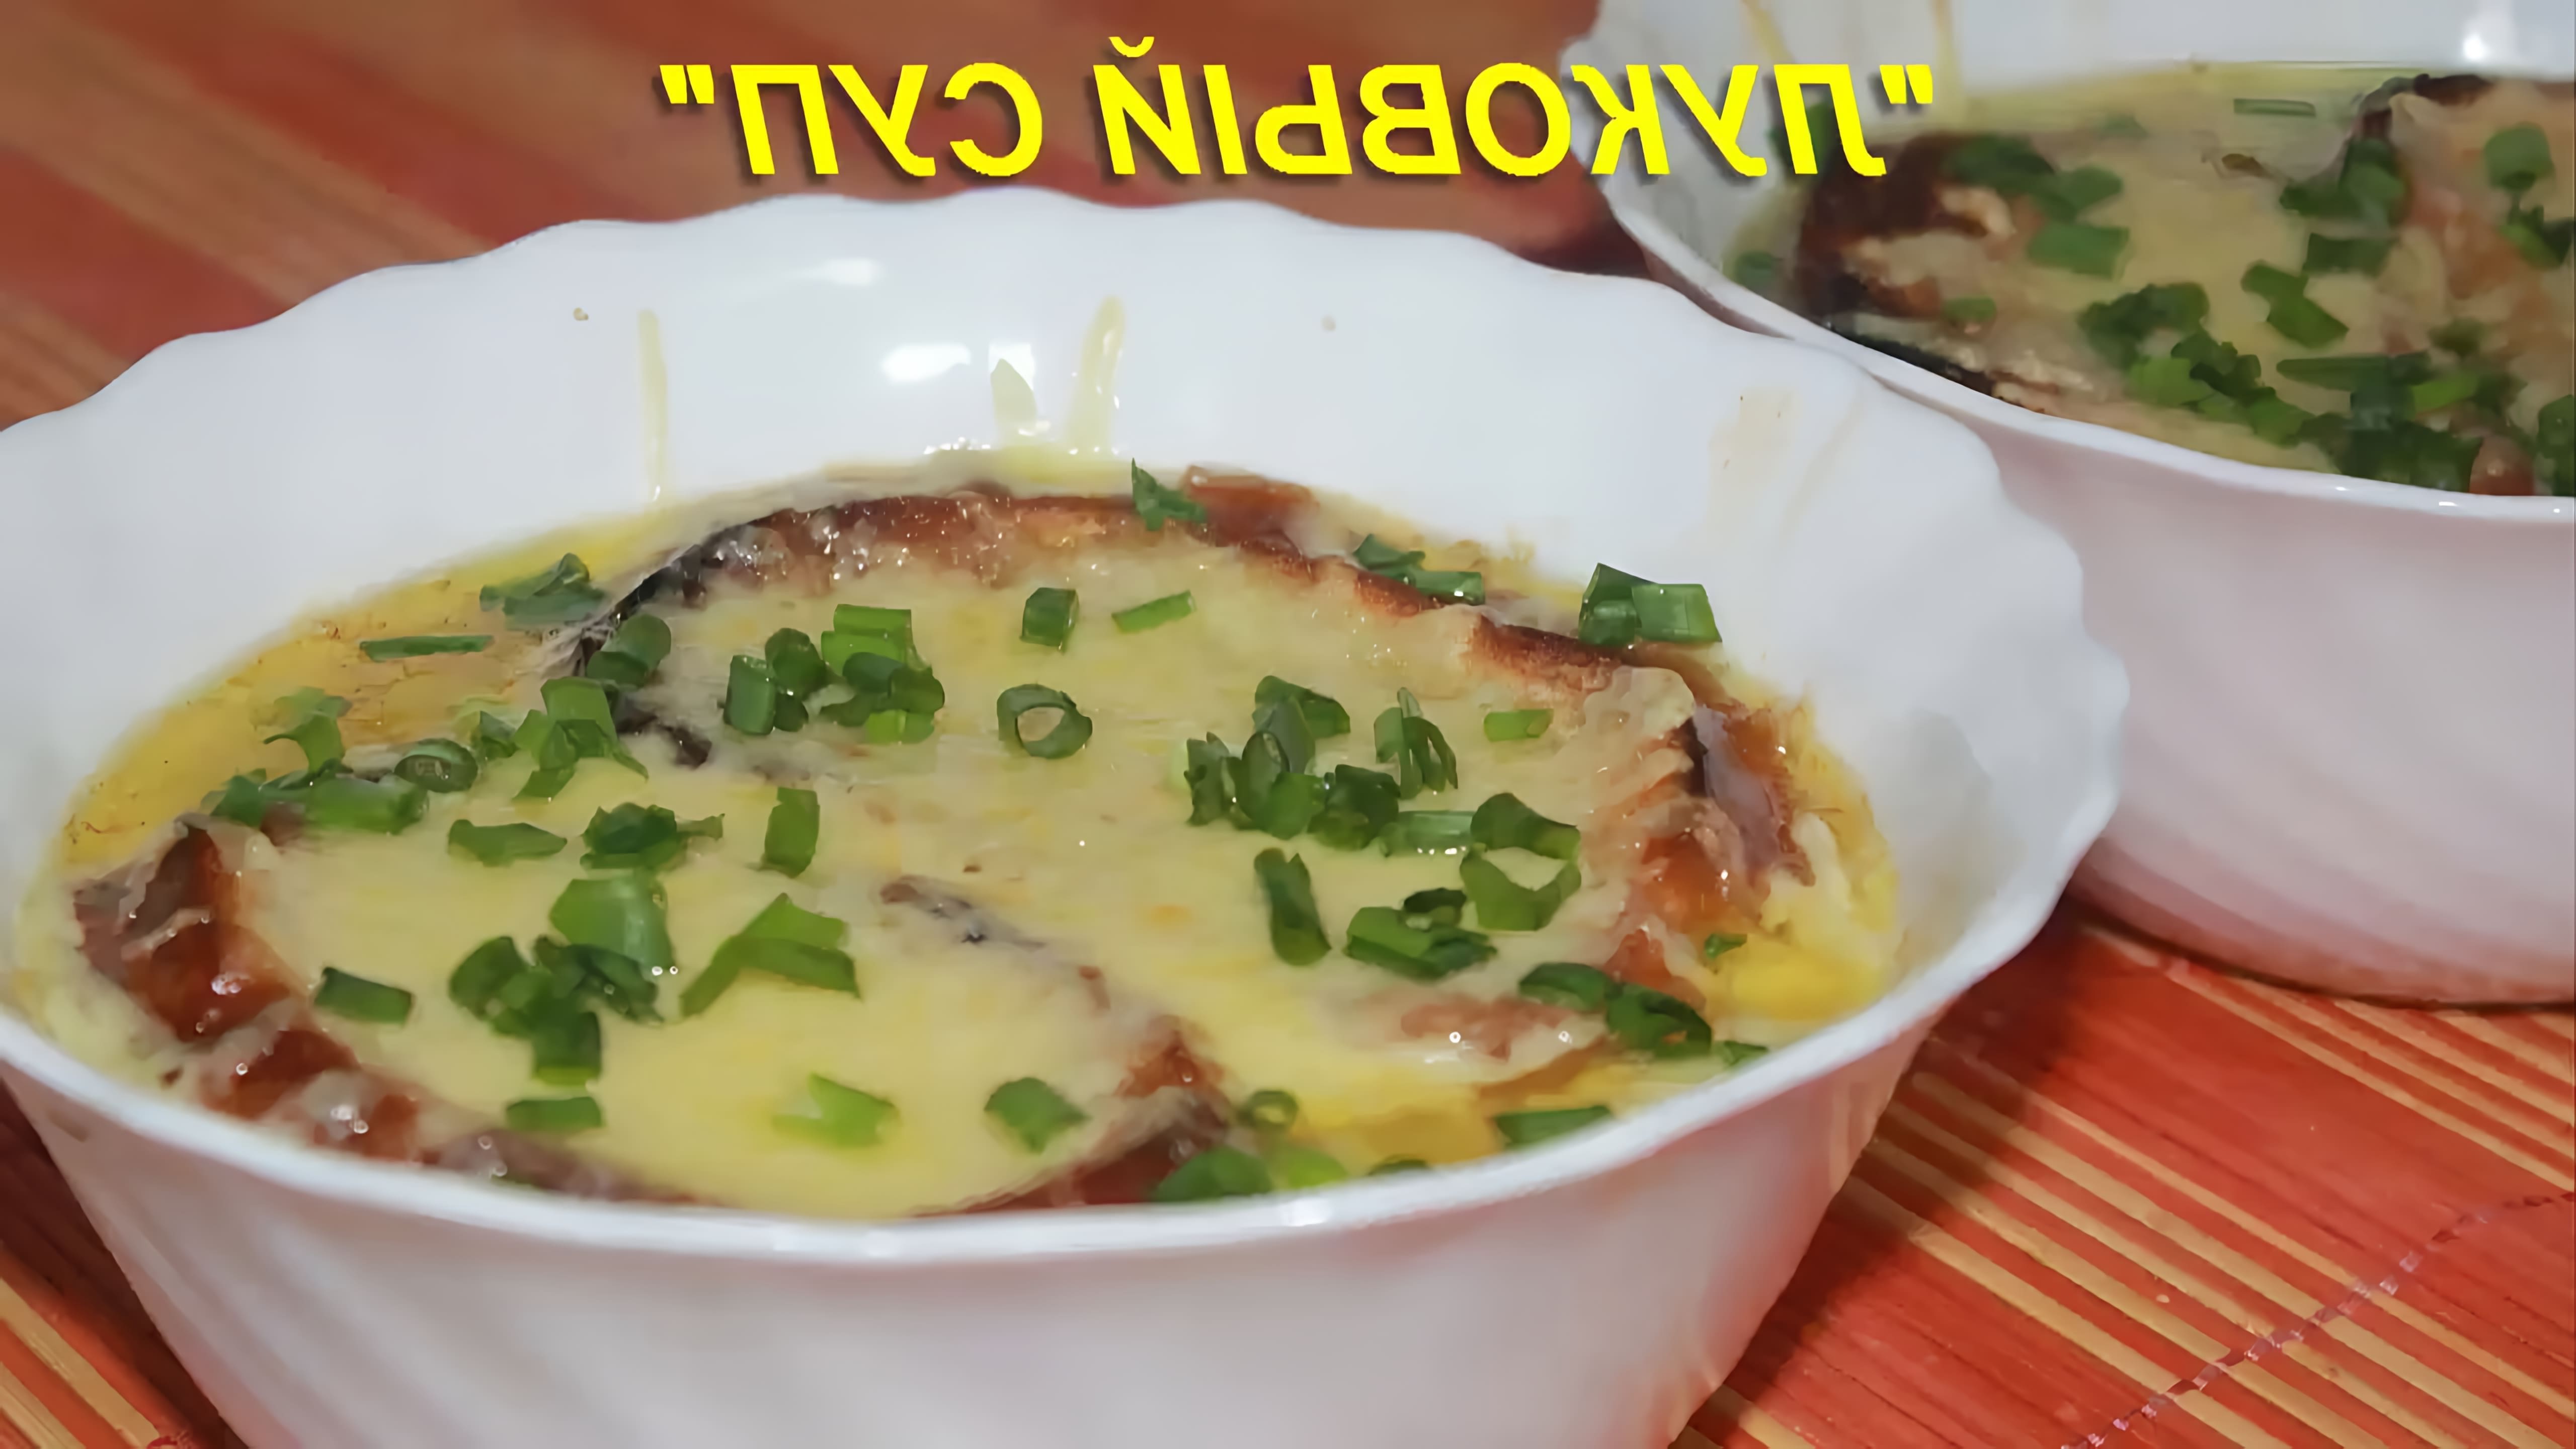 В этом видео демонстрируется рецепт лукового супа, который является простым и доступным блюдом